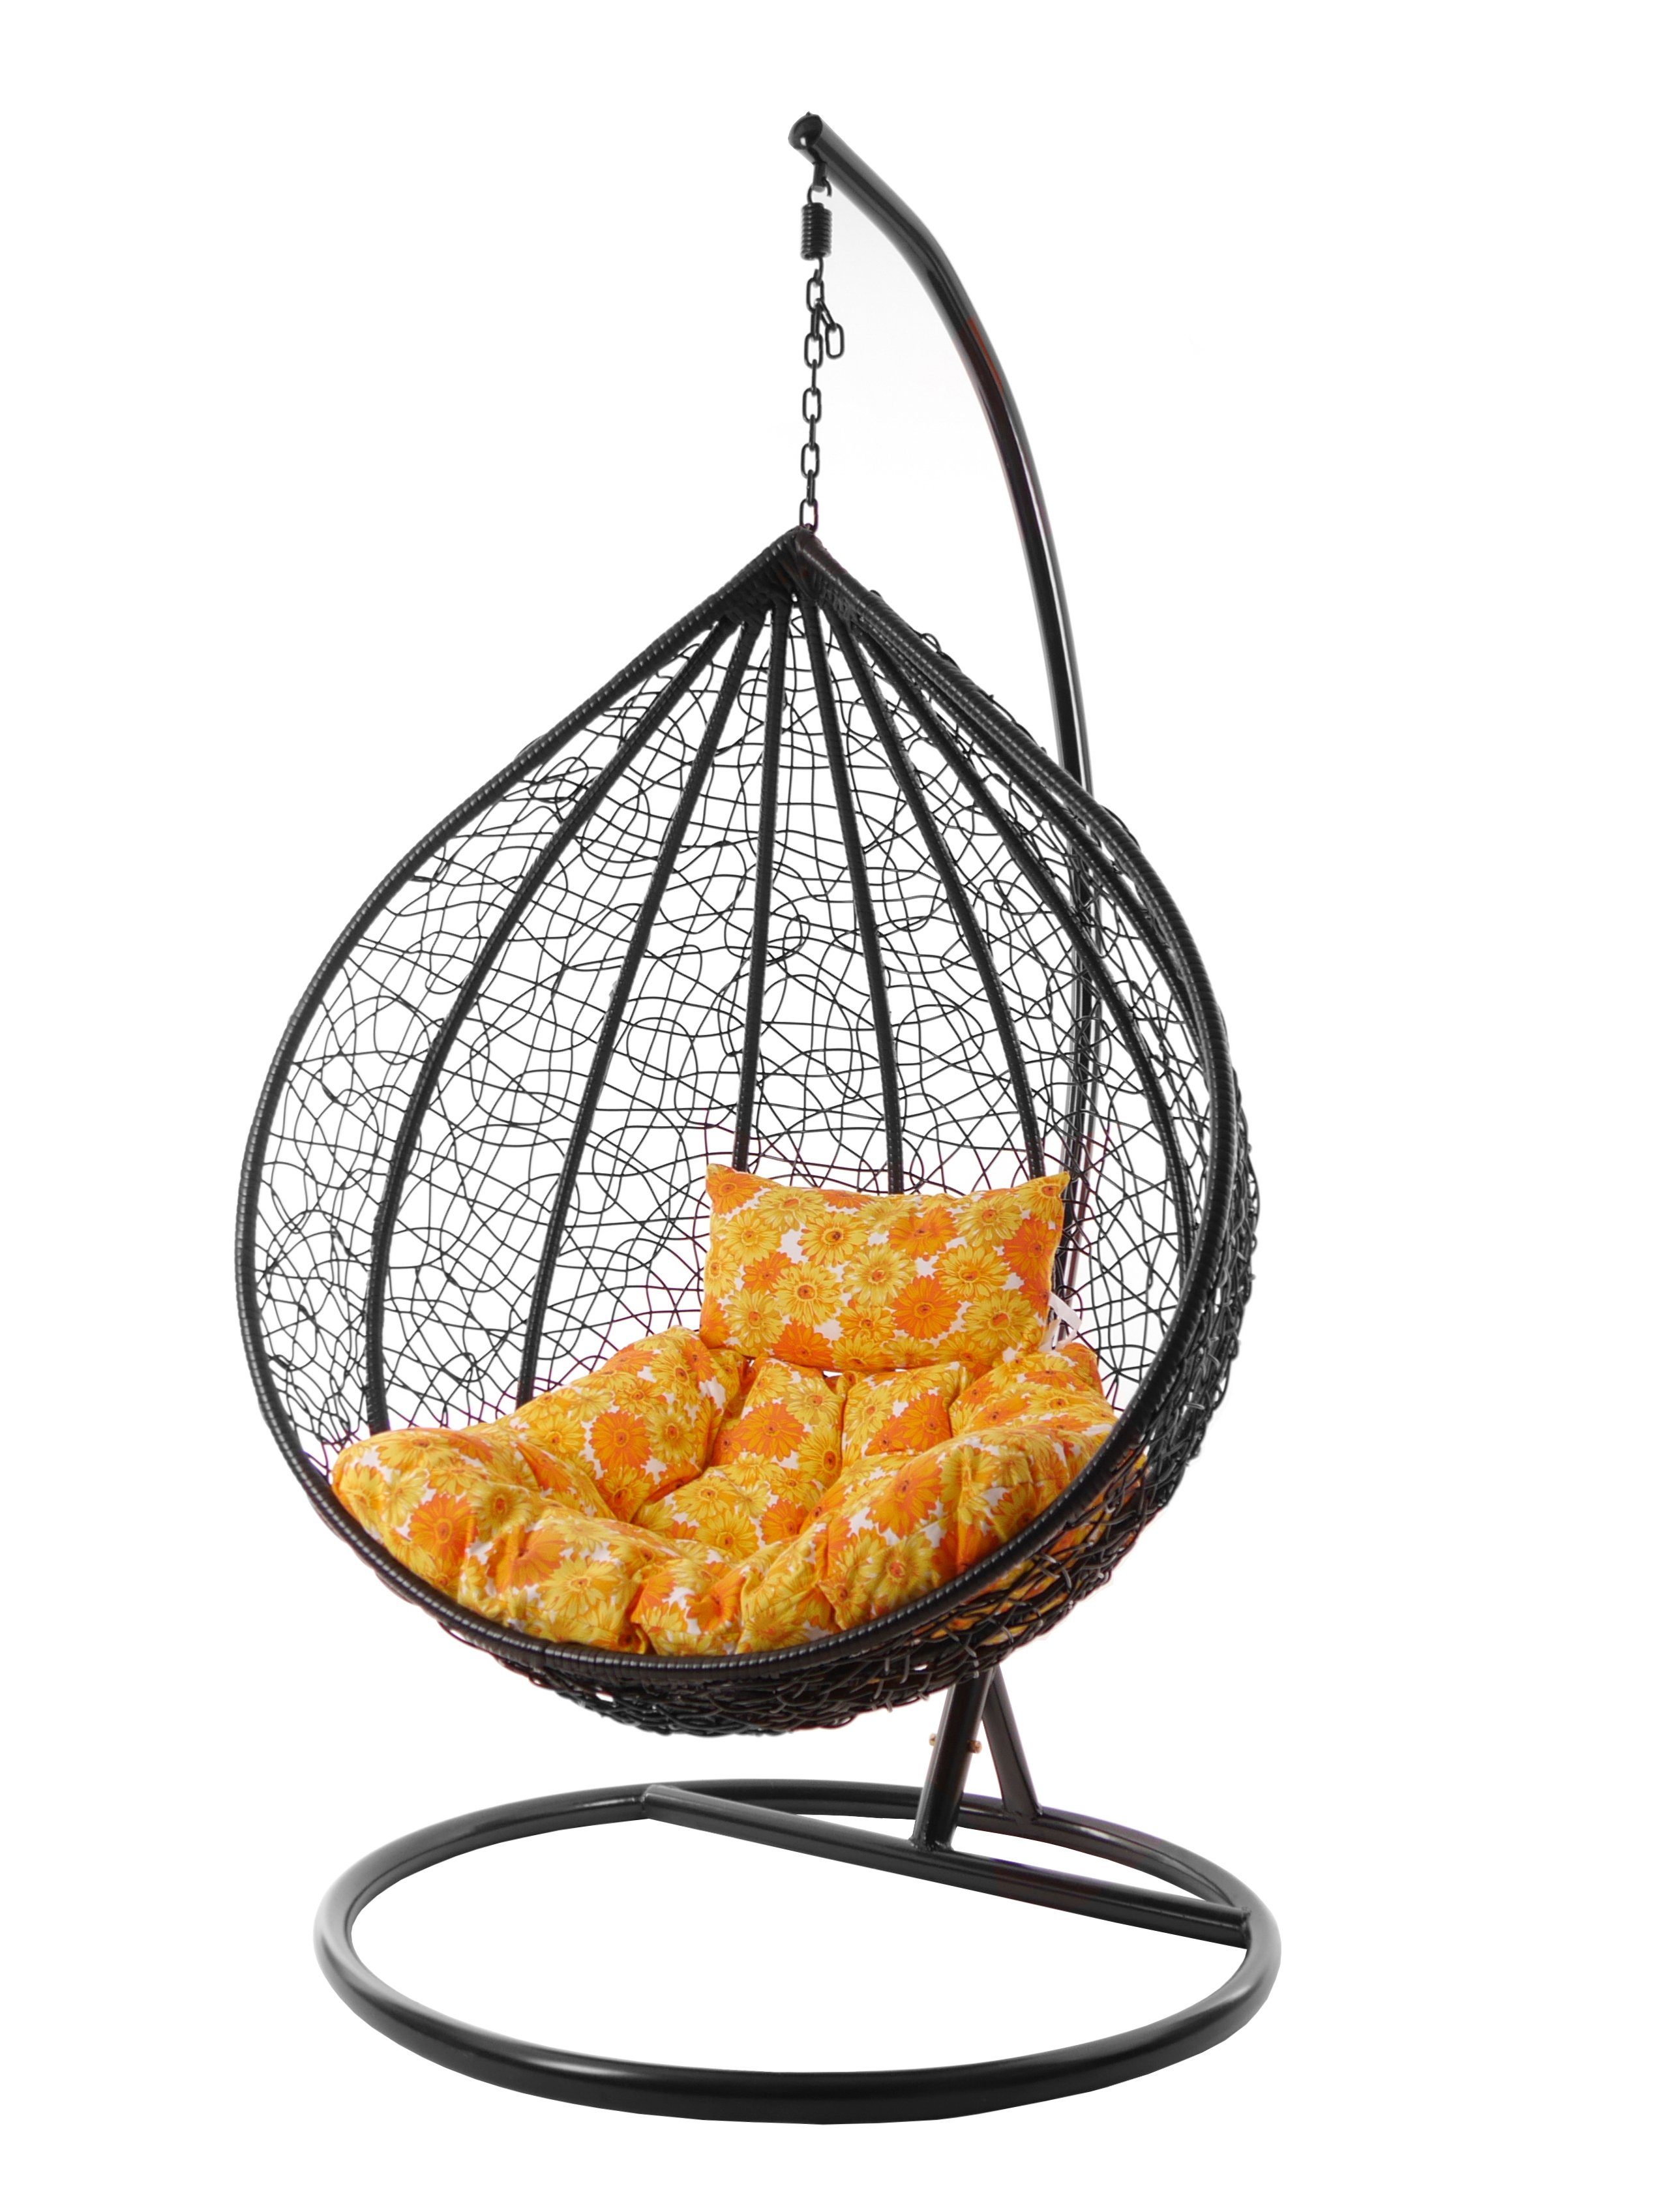 KIDEO Hängesessel Hängesessel MANACOR schwarz, edles schwarz, moderner Swing Chair, Schwebesessel inklusive Gestell und Kissen sonnenblumen (2300 sunflower)